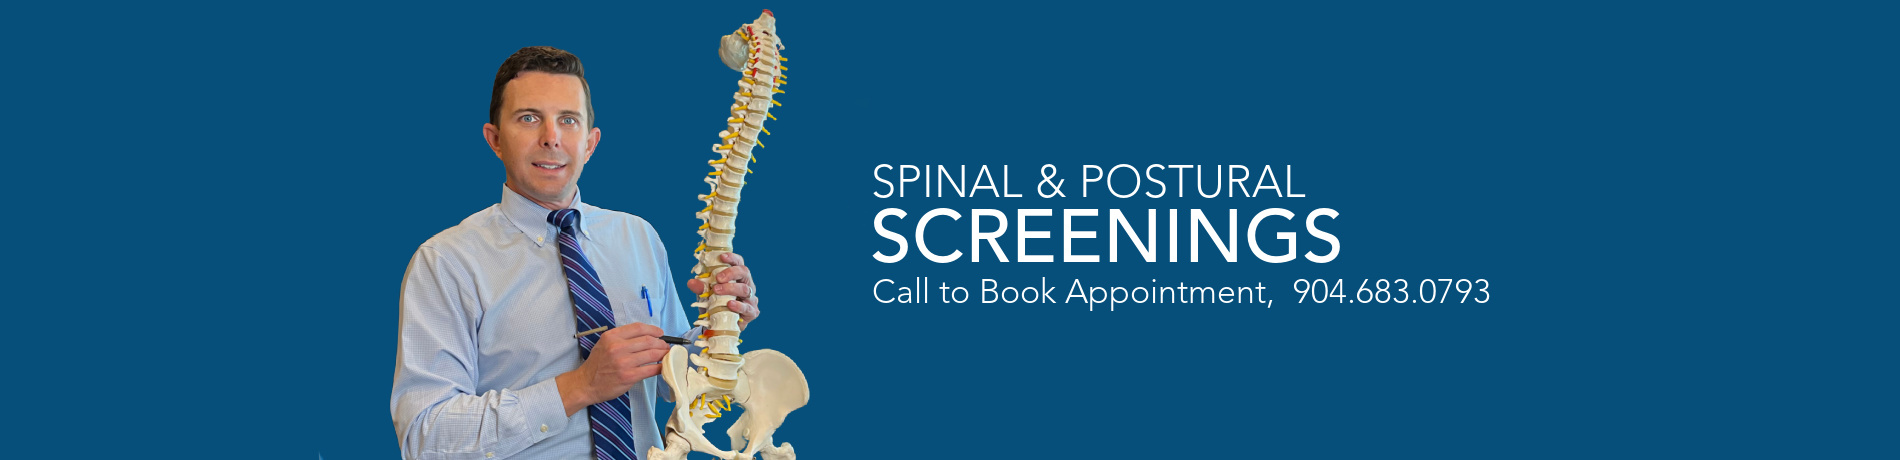 Spinal & Postural Screenings